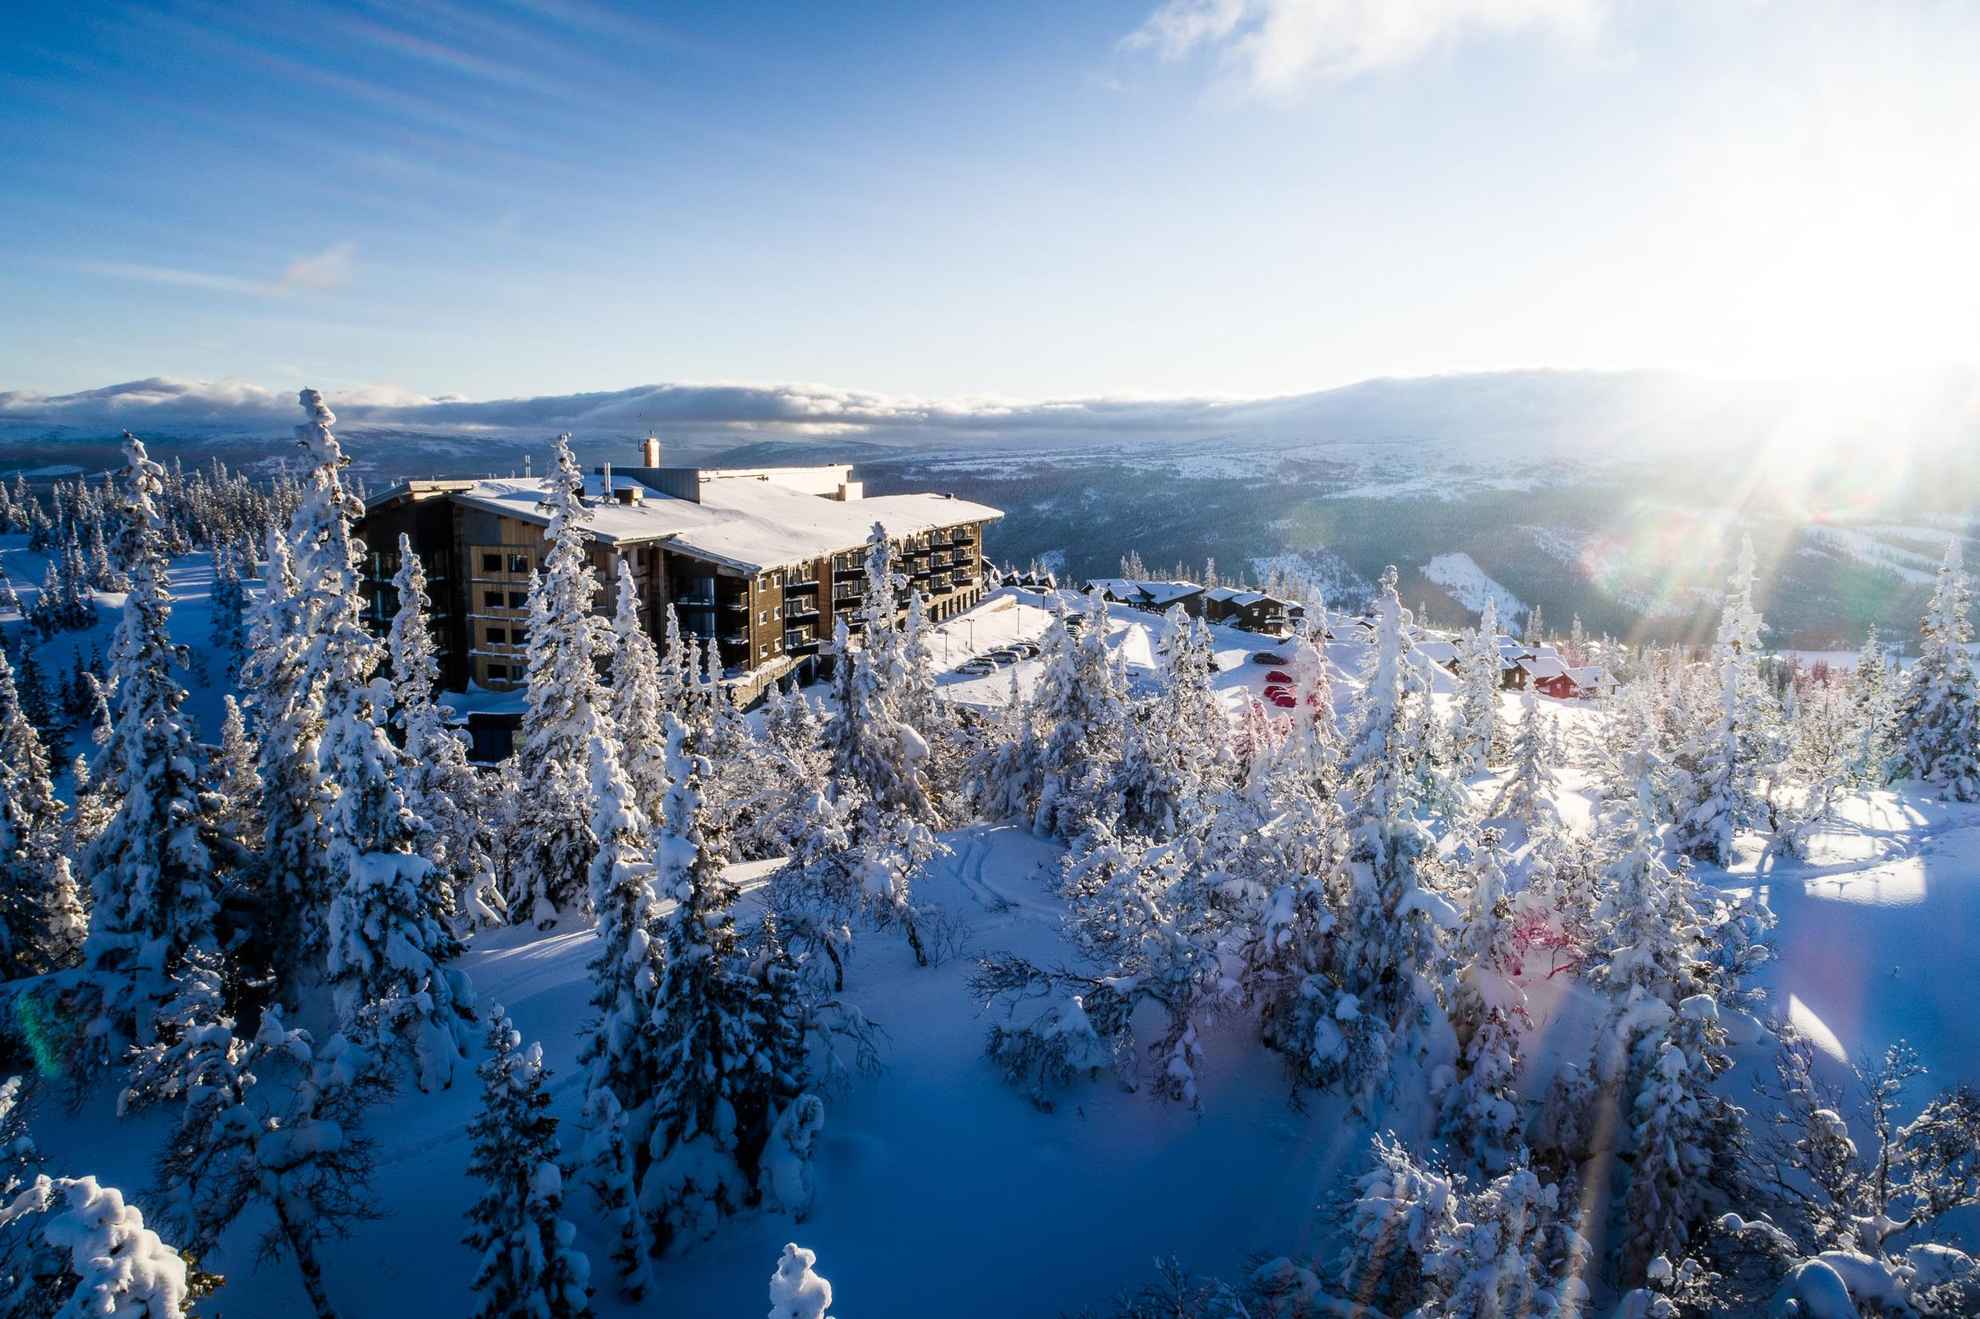 Winterse aanblik van een hotel gelegen op de top van de berg gezien in het zonlicht.